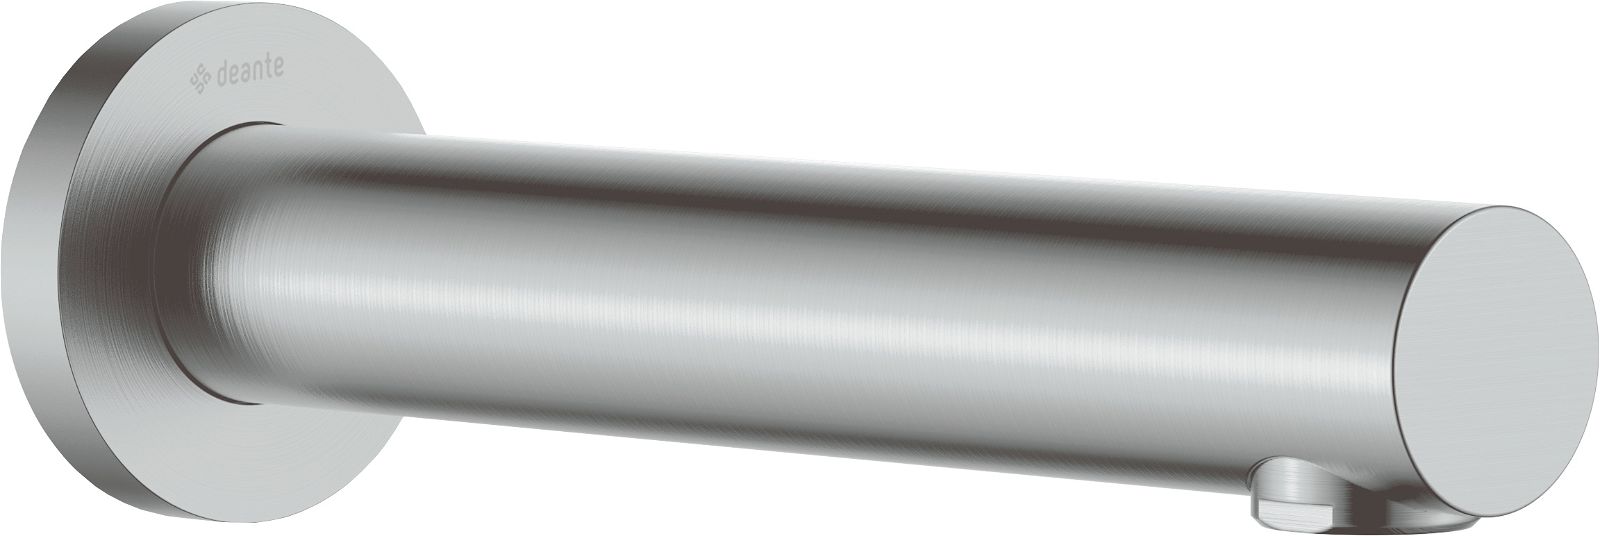 Bathtub spout - 200 mm - NAC_F81K - Główne zdjęcie produktowe